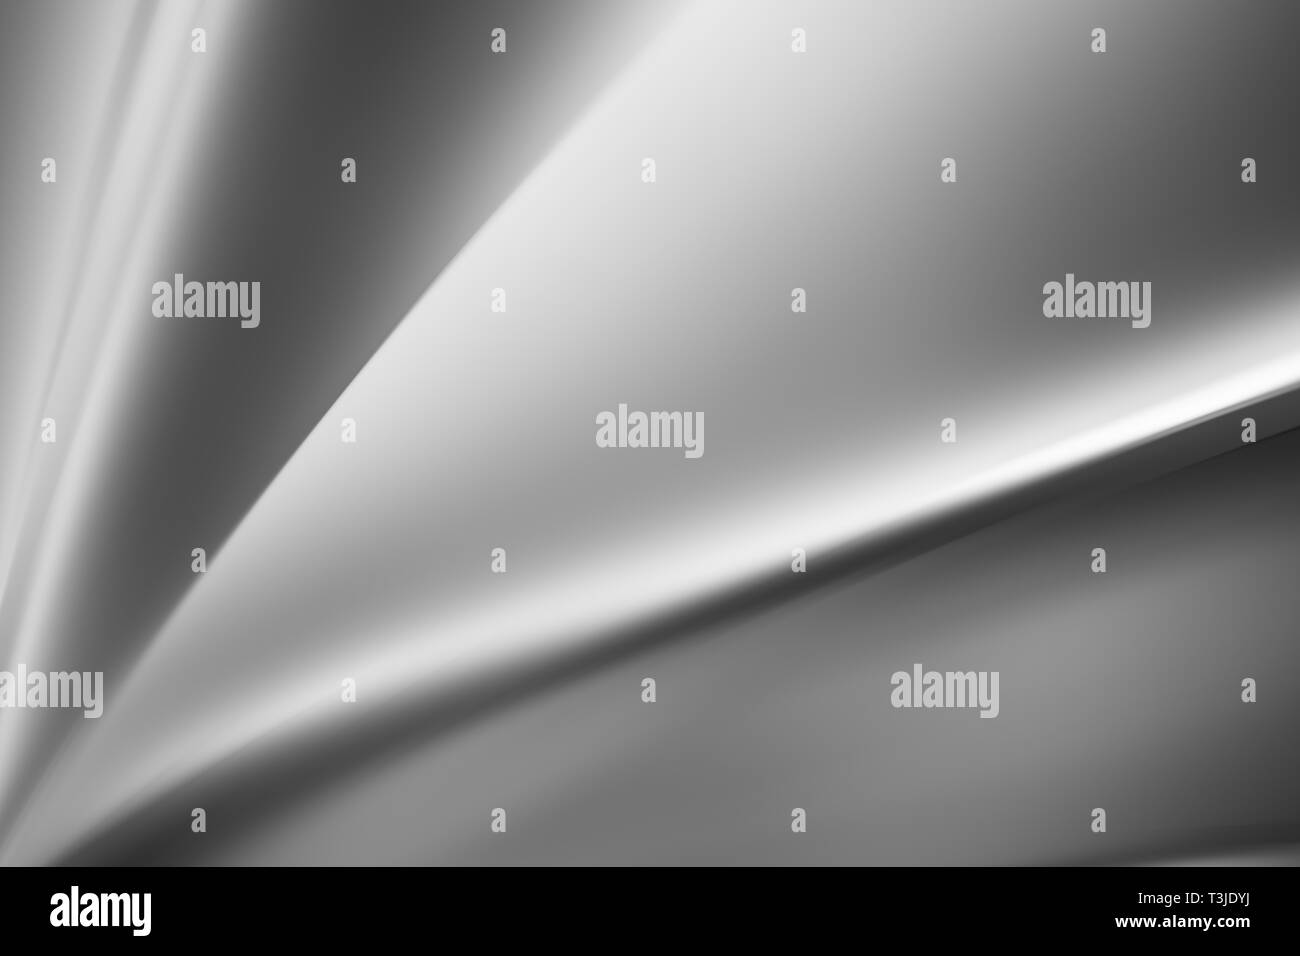 Abstrakte weiße glatte Falten Welle von Schatten und Schatten Gradienten Abbildung für Hintergrund. Stockfoto